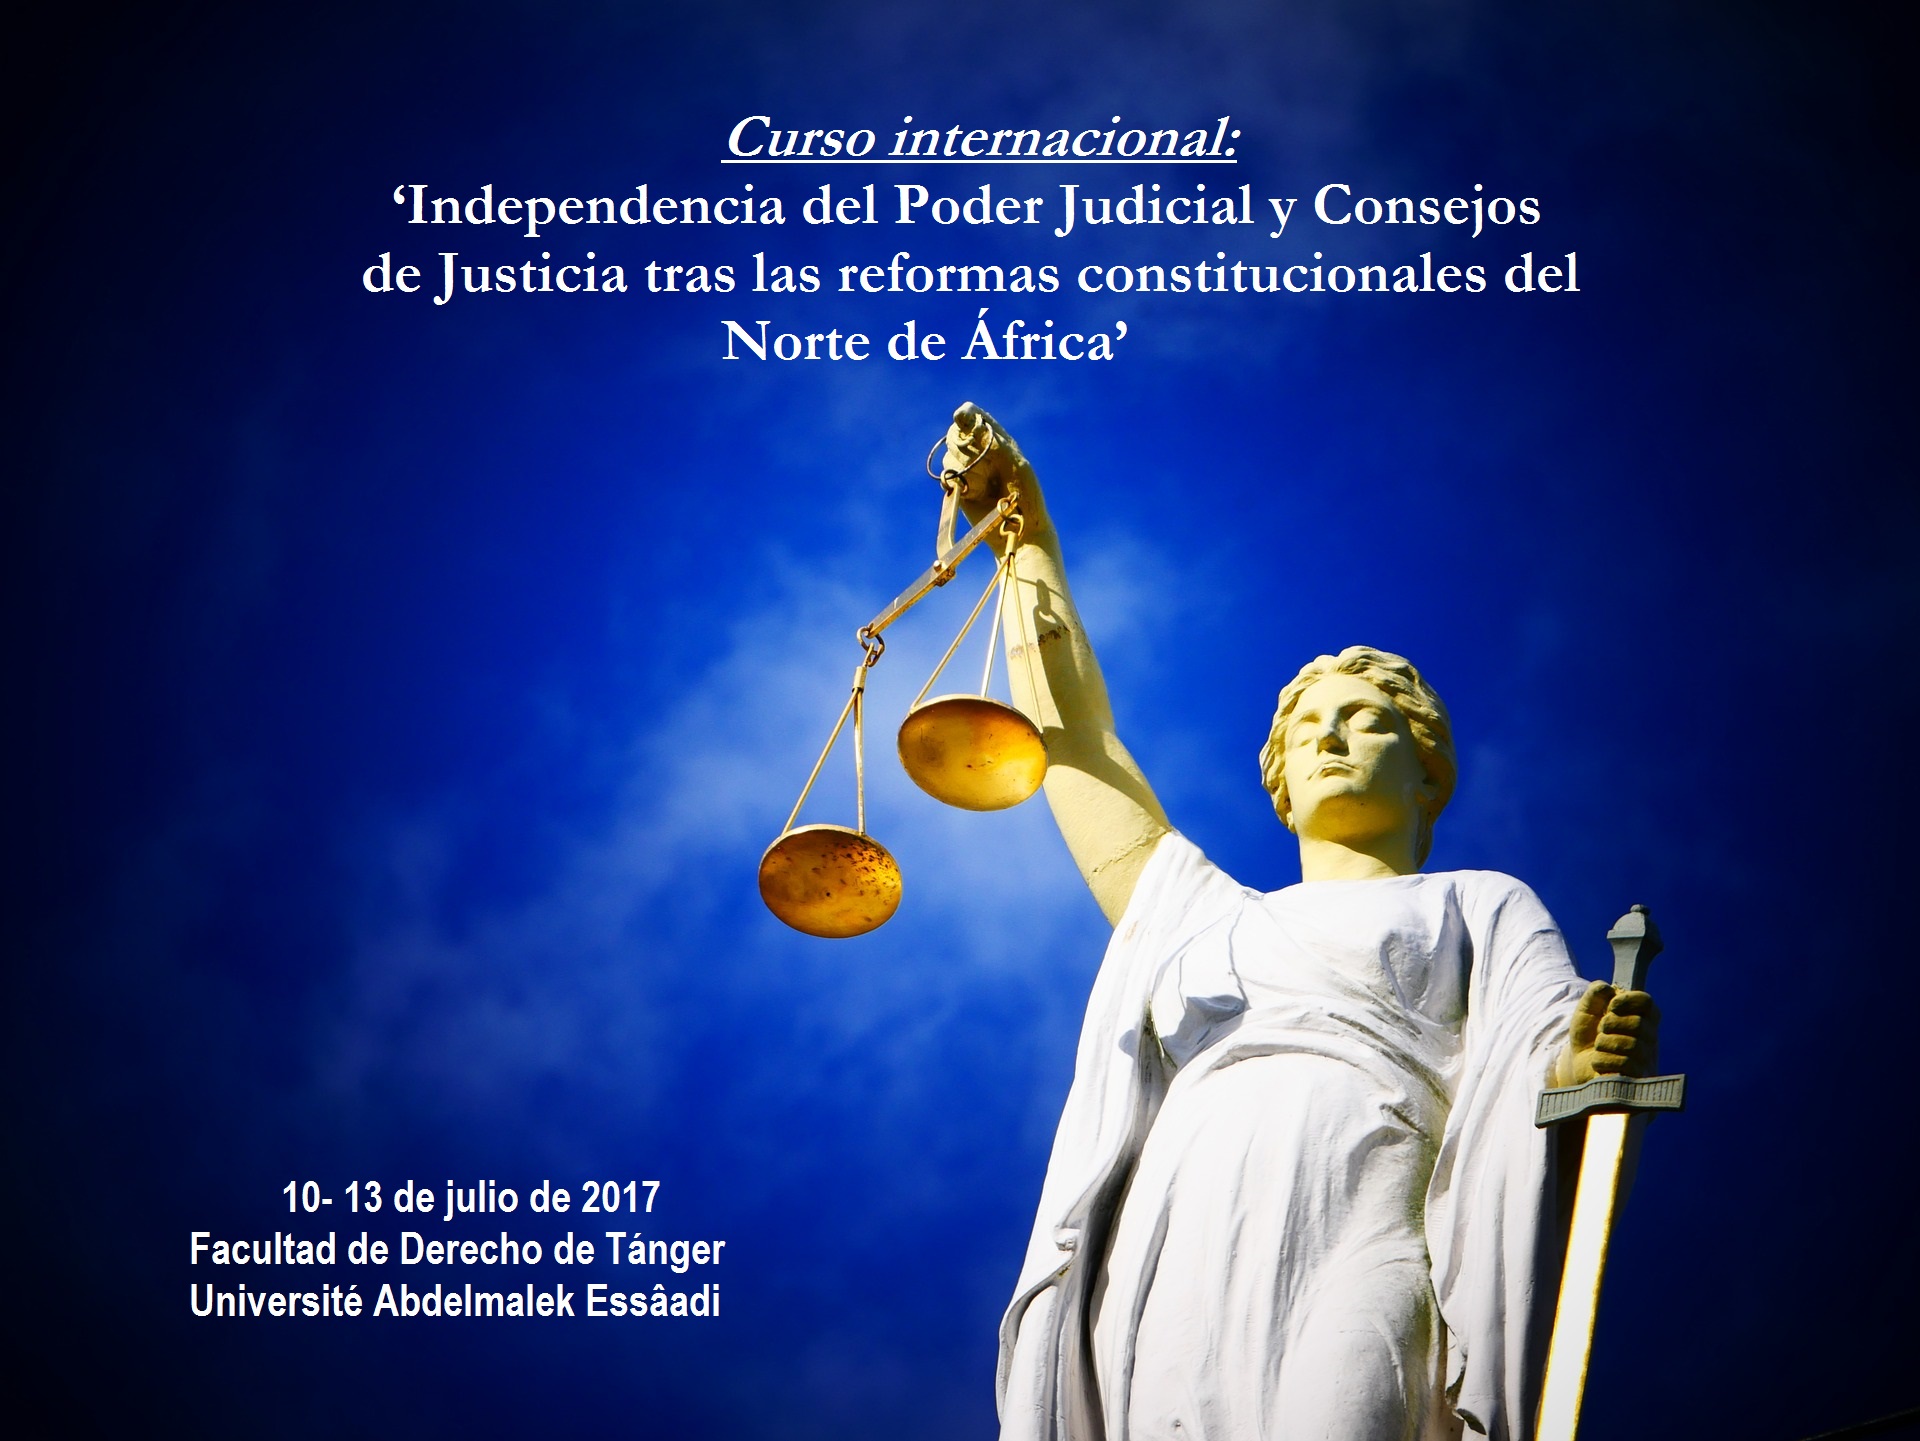 CURSO INTERNACIONAL: Independencia del Poder Judicial y Consejos de Justicia tras las Reformas Constitucionales del norte de África